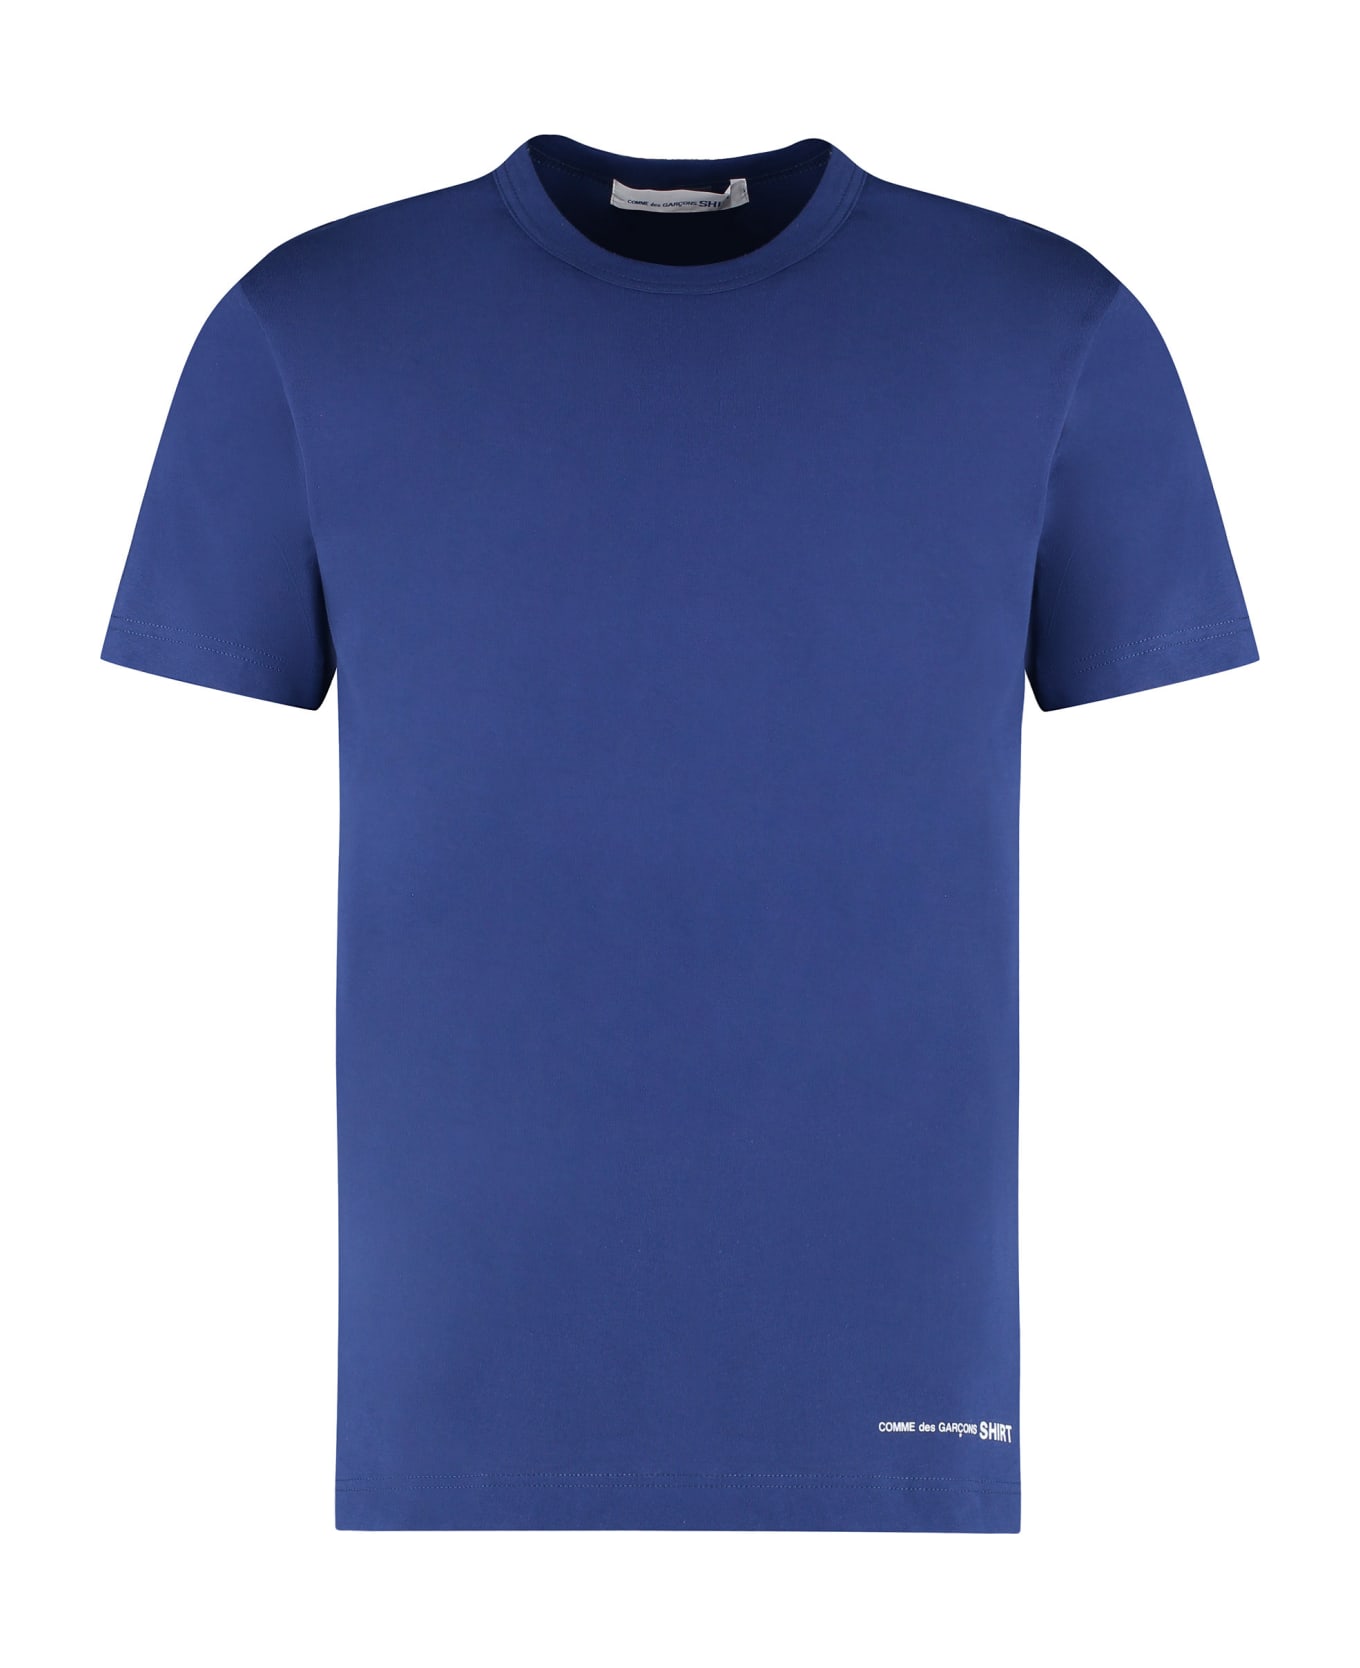 Comme des Garçons Shirt Cotton Crew-neck T-shirt - blue